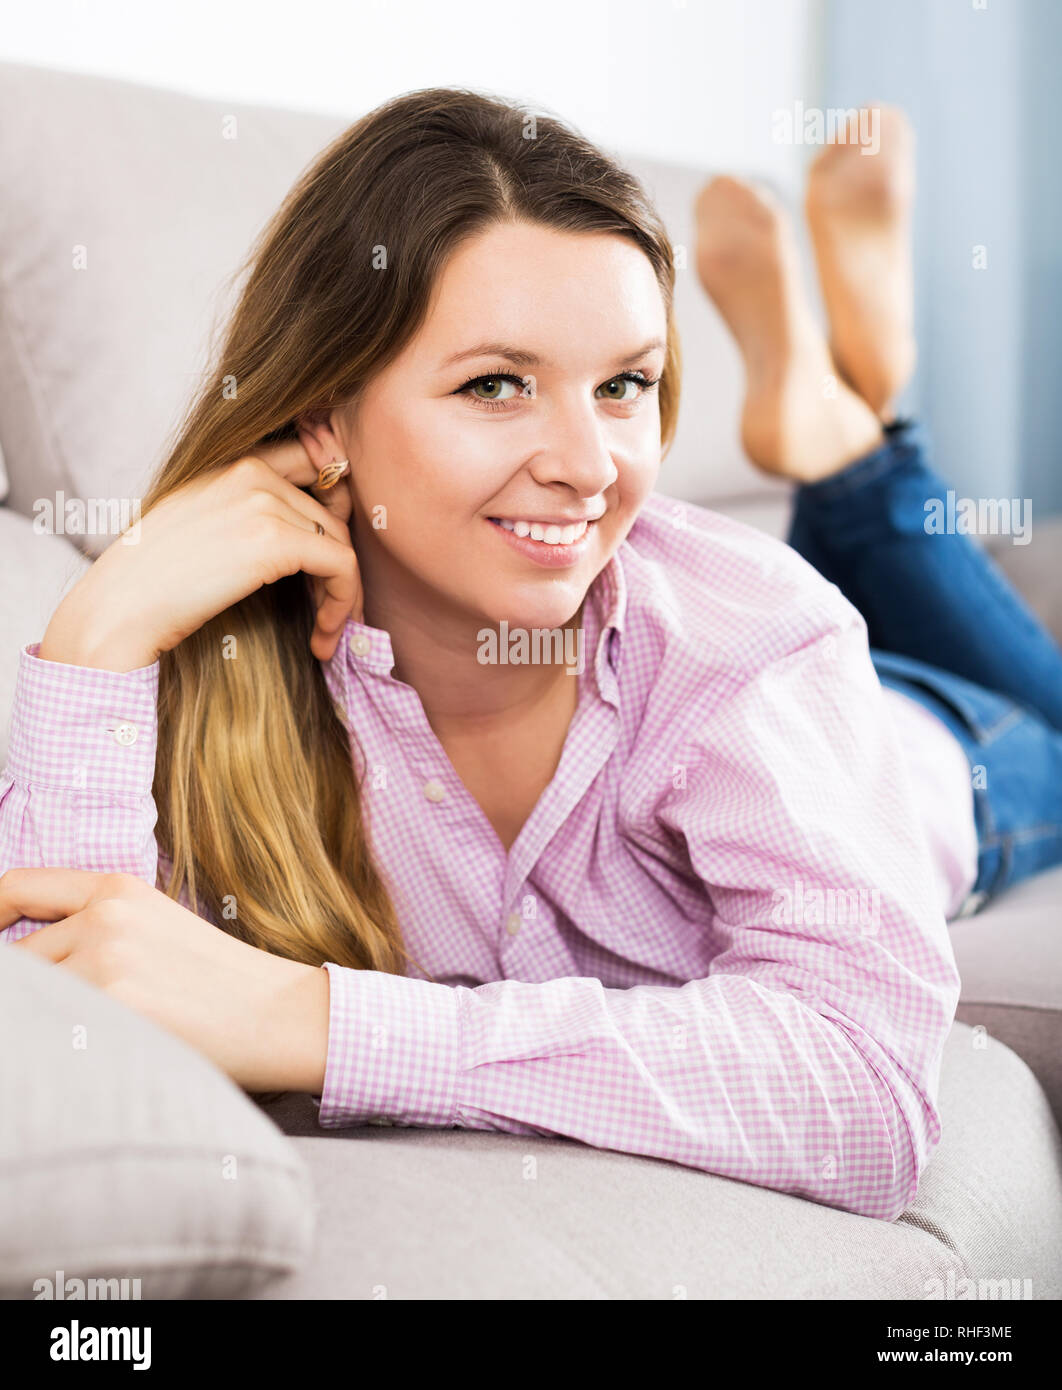 Mujer sonriente joven posando alegremente en buen humor en tiempo libre en el interior Foto de stock